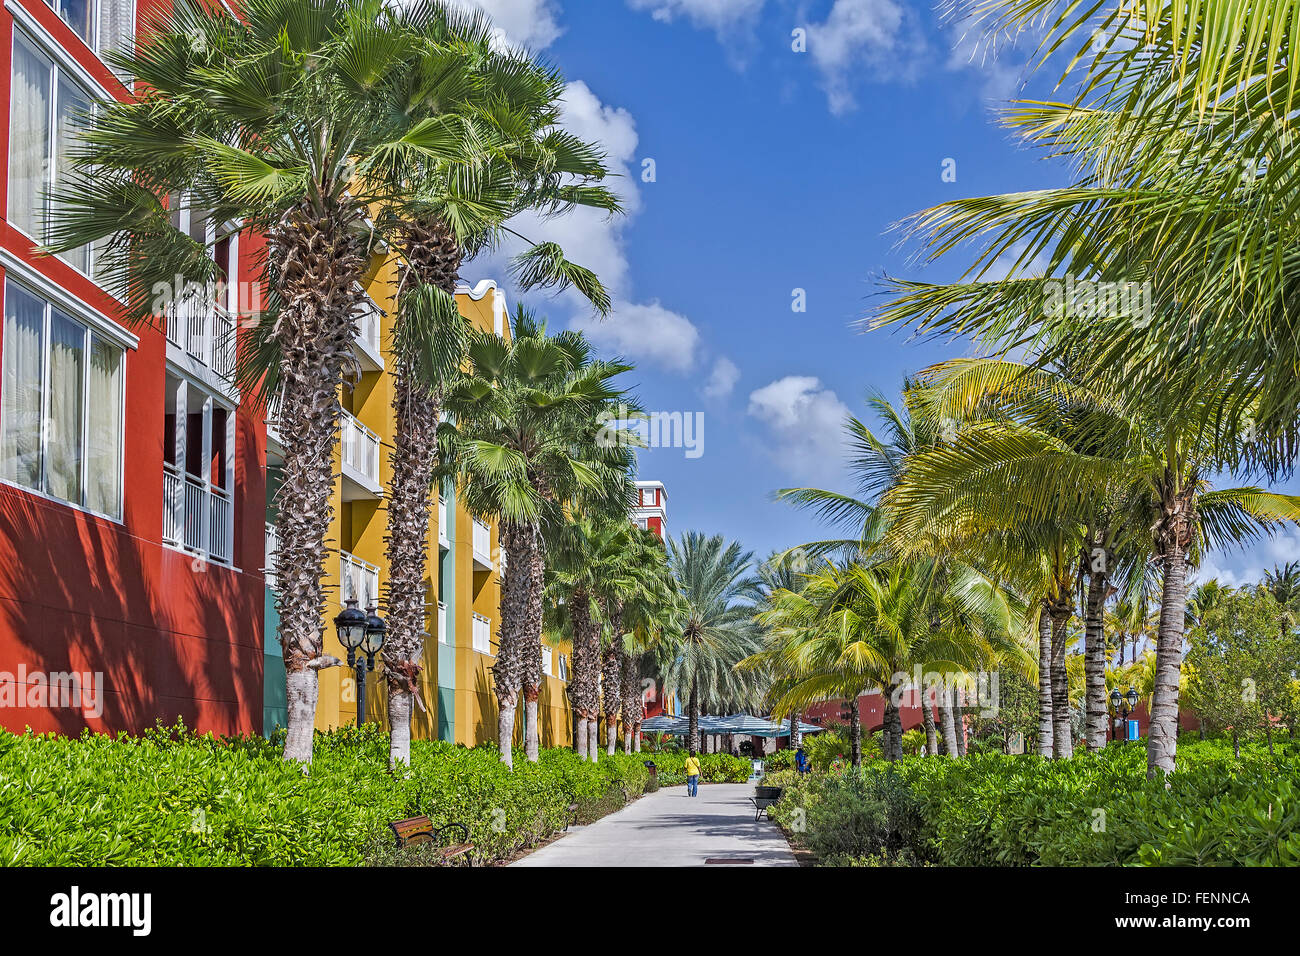 Avenida De palmeras Willemstad, Curacao Foto de stock